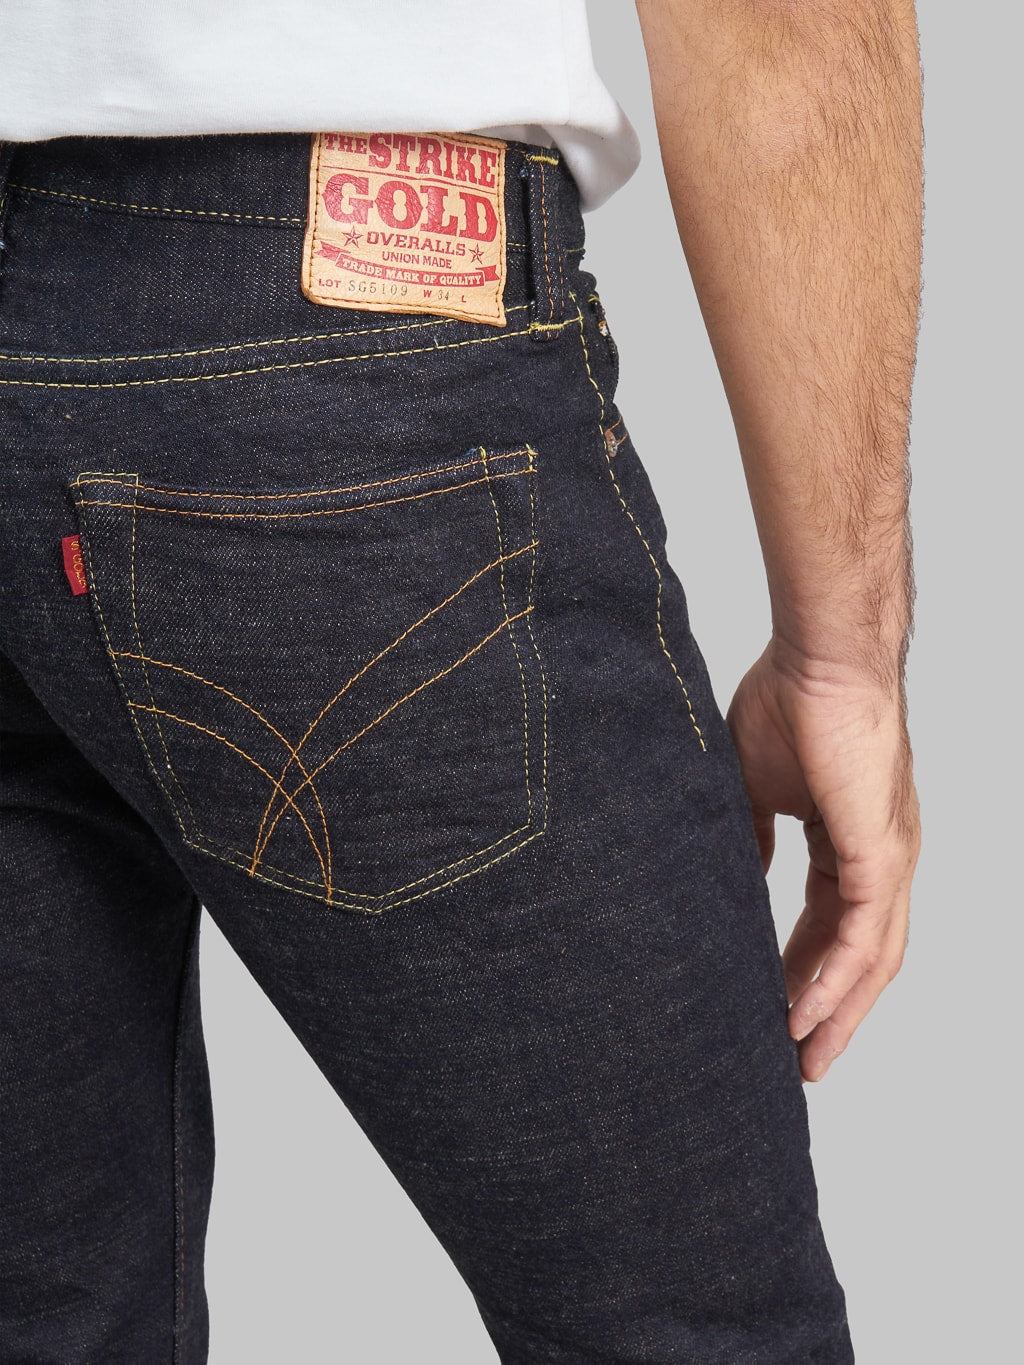 The Strike Gold 5109 15oz Slub Grey Weft Slim Tapered Jeans pocket